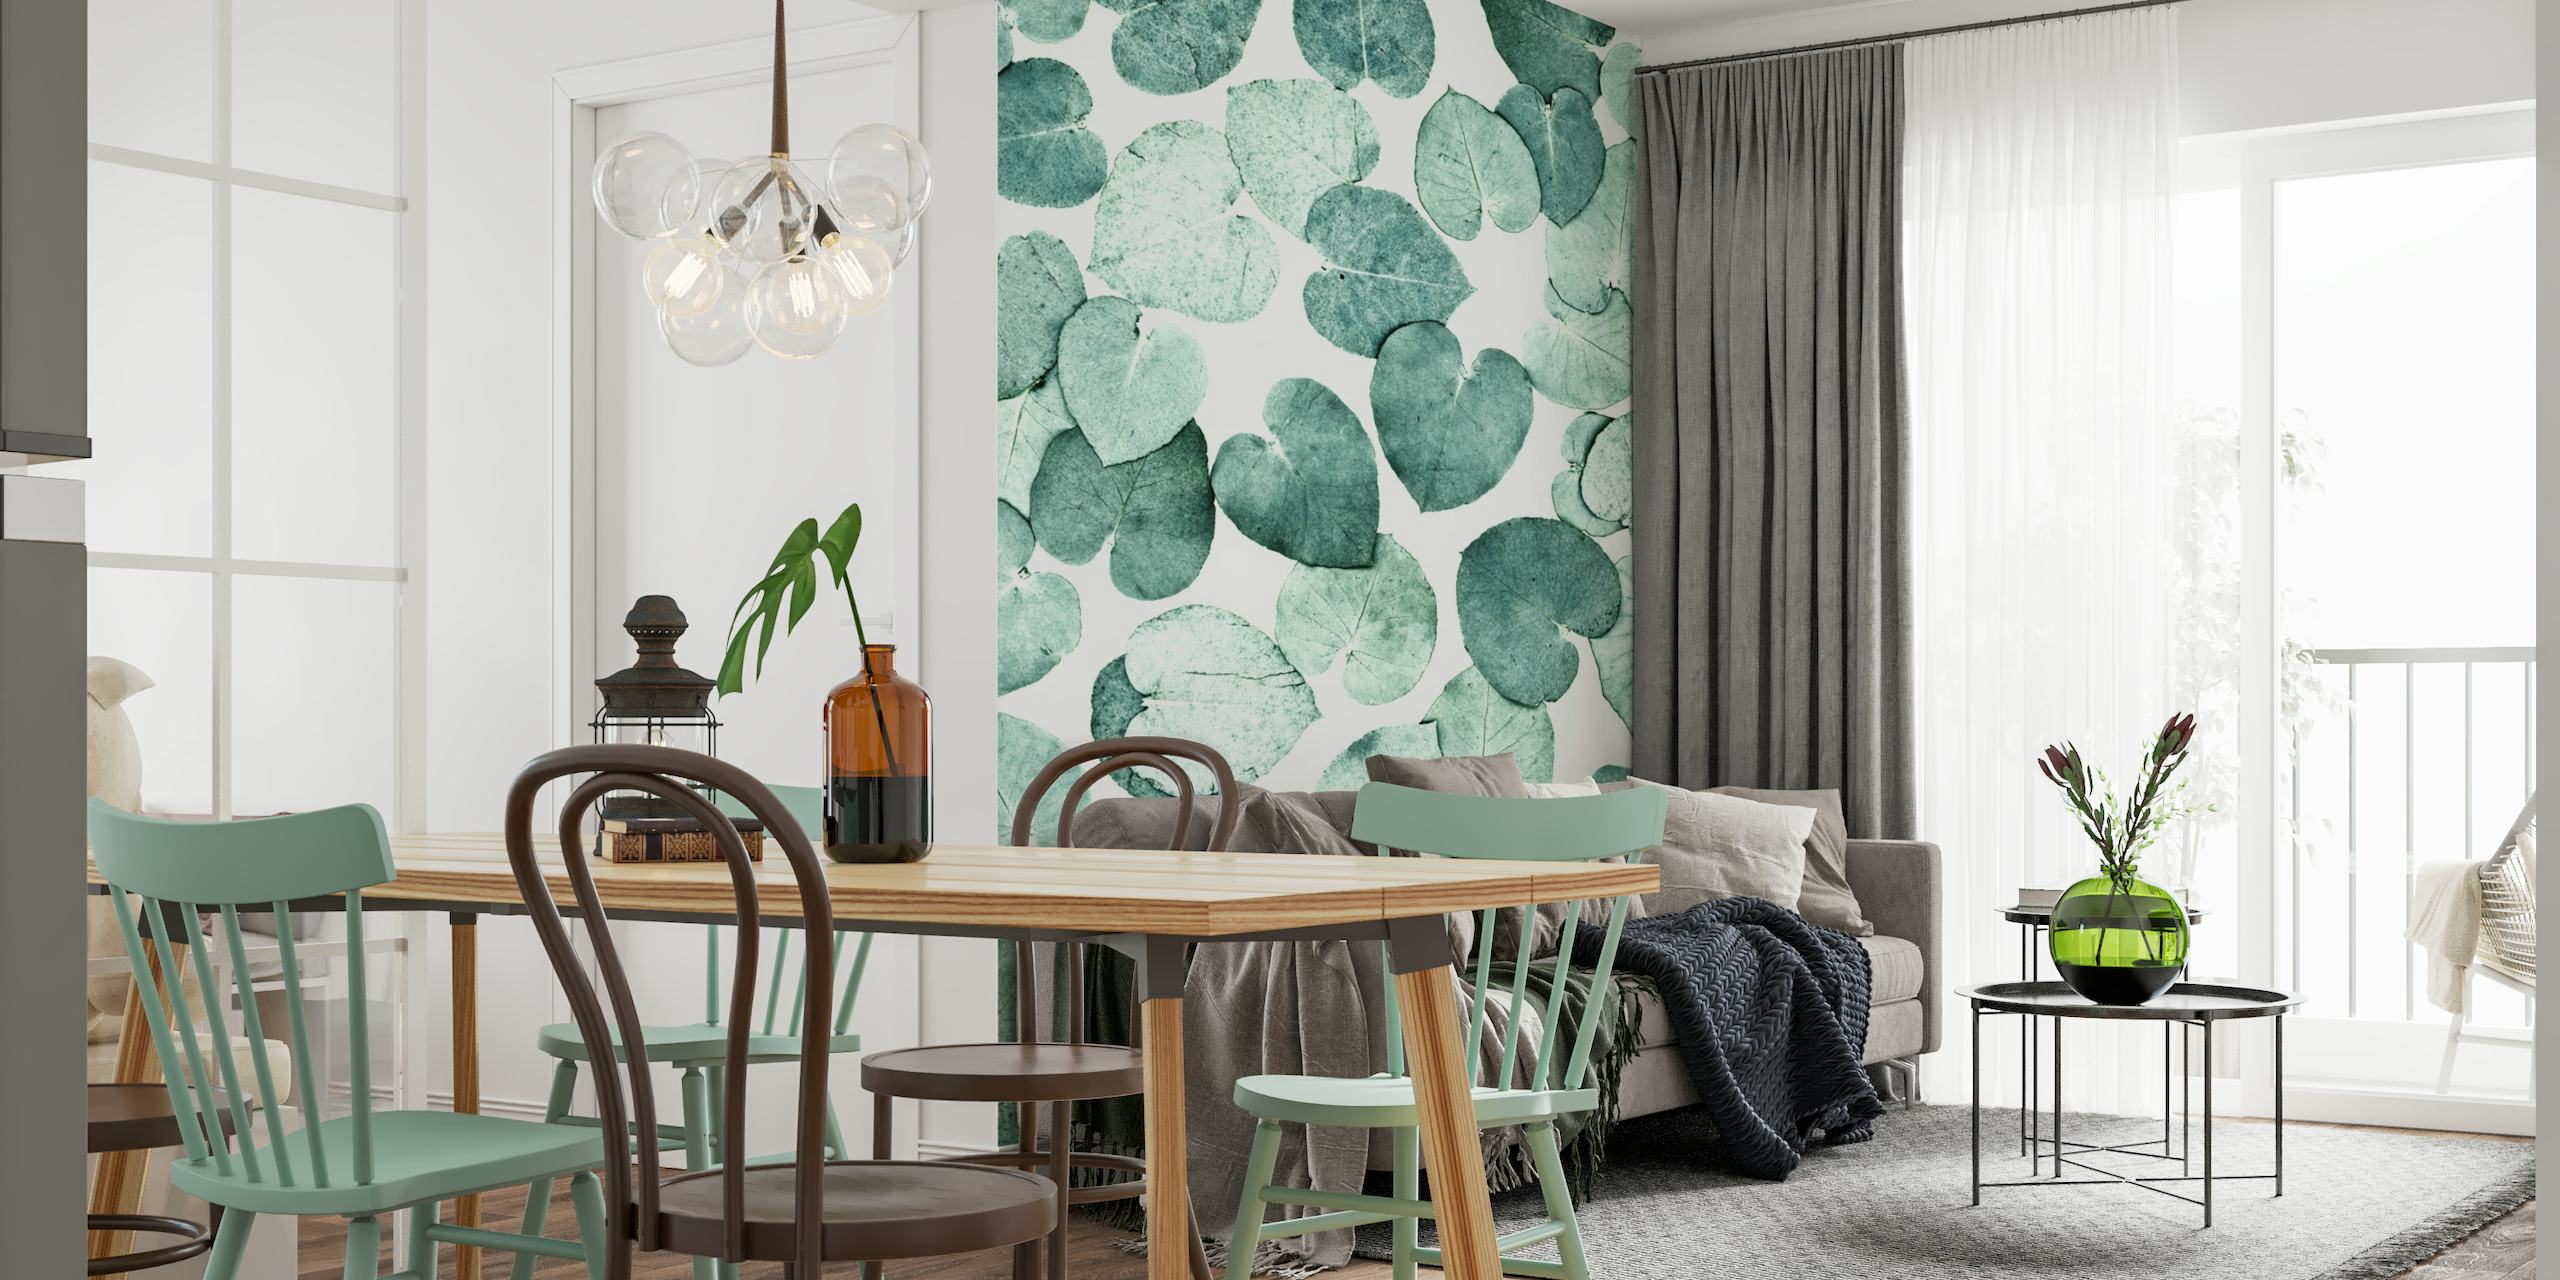 Fotomural vinílico de parede com padrão de folha verde para um design de interiores tranquilo